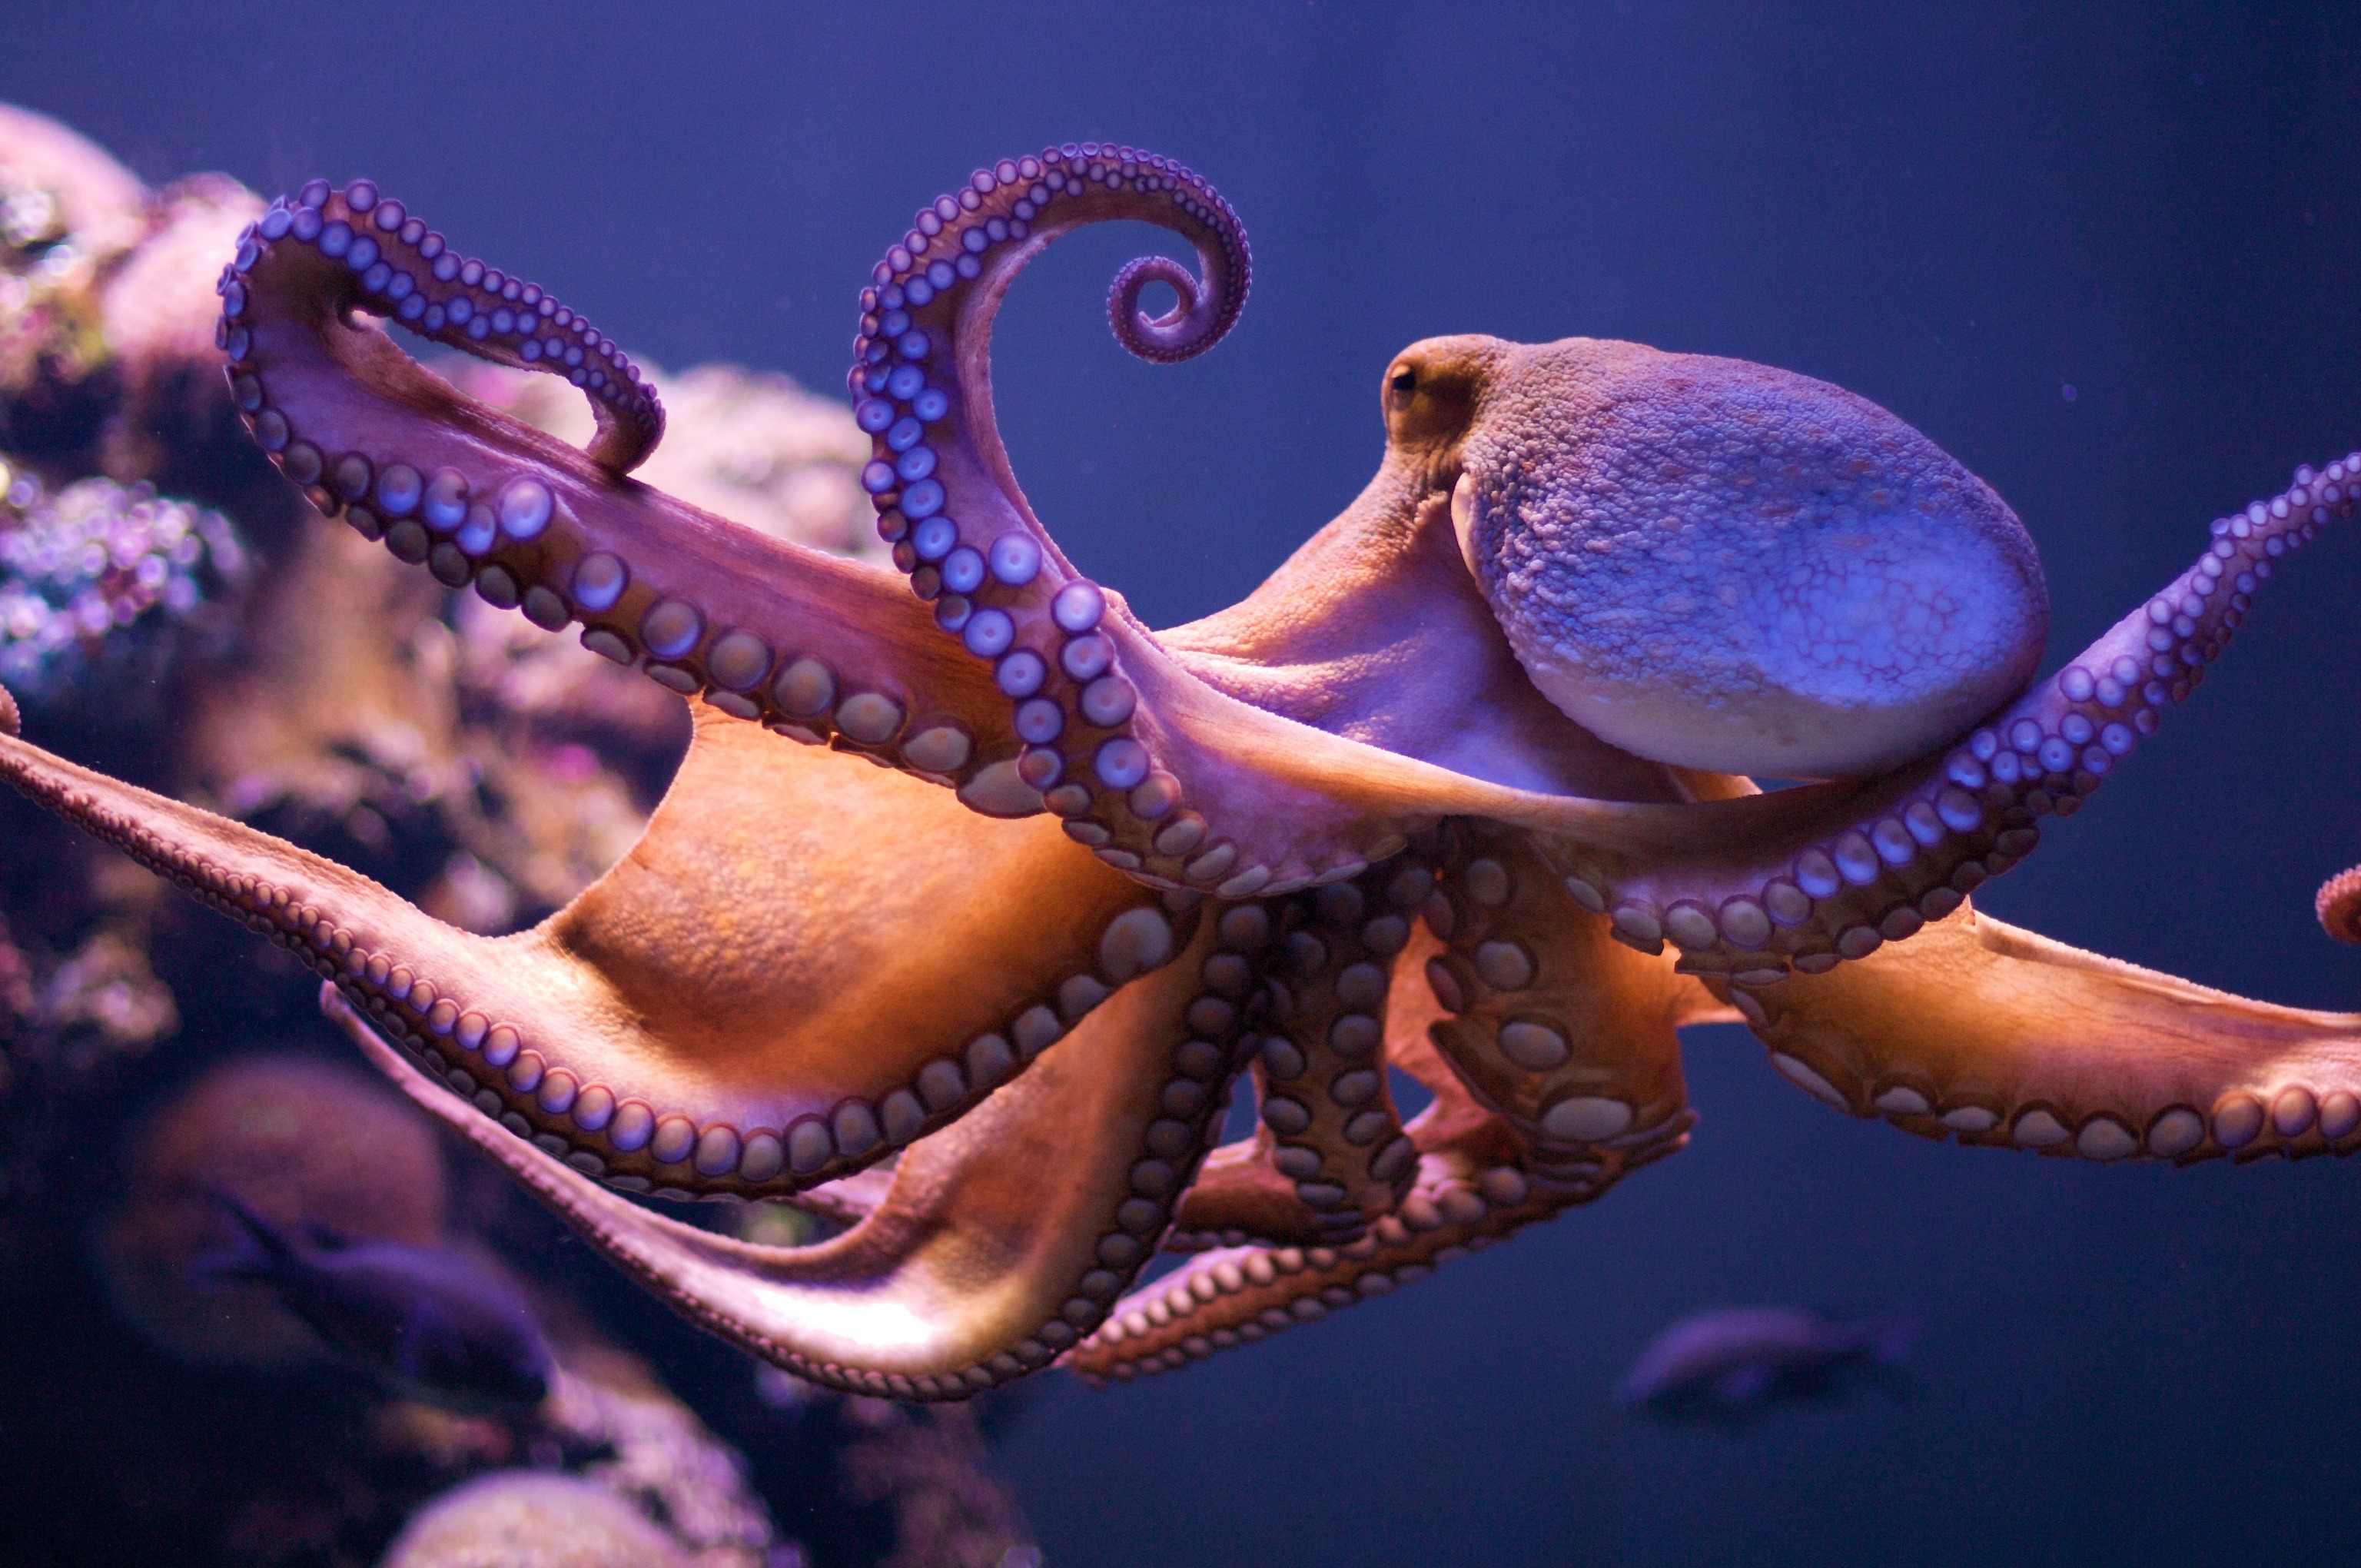 Voisins des seiches et des calmars, des céphalopodes qui ont dix bras, les octopodes en ont huit. Ces as du camouflage, capables de se faufiler dans les fonds rocheux, sont remarquablement intelligents. © Morten Brekkevold, Flickr, cc by nc sa 2.0